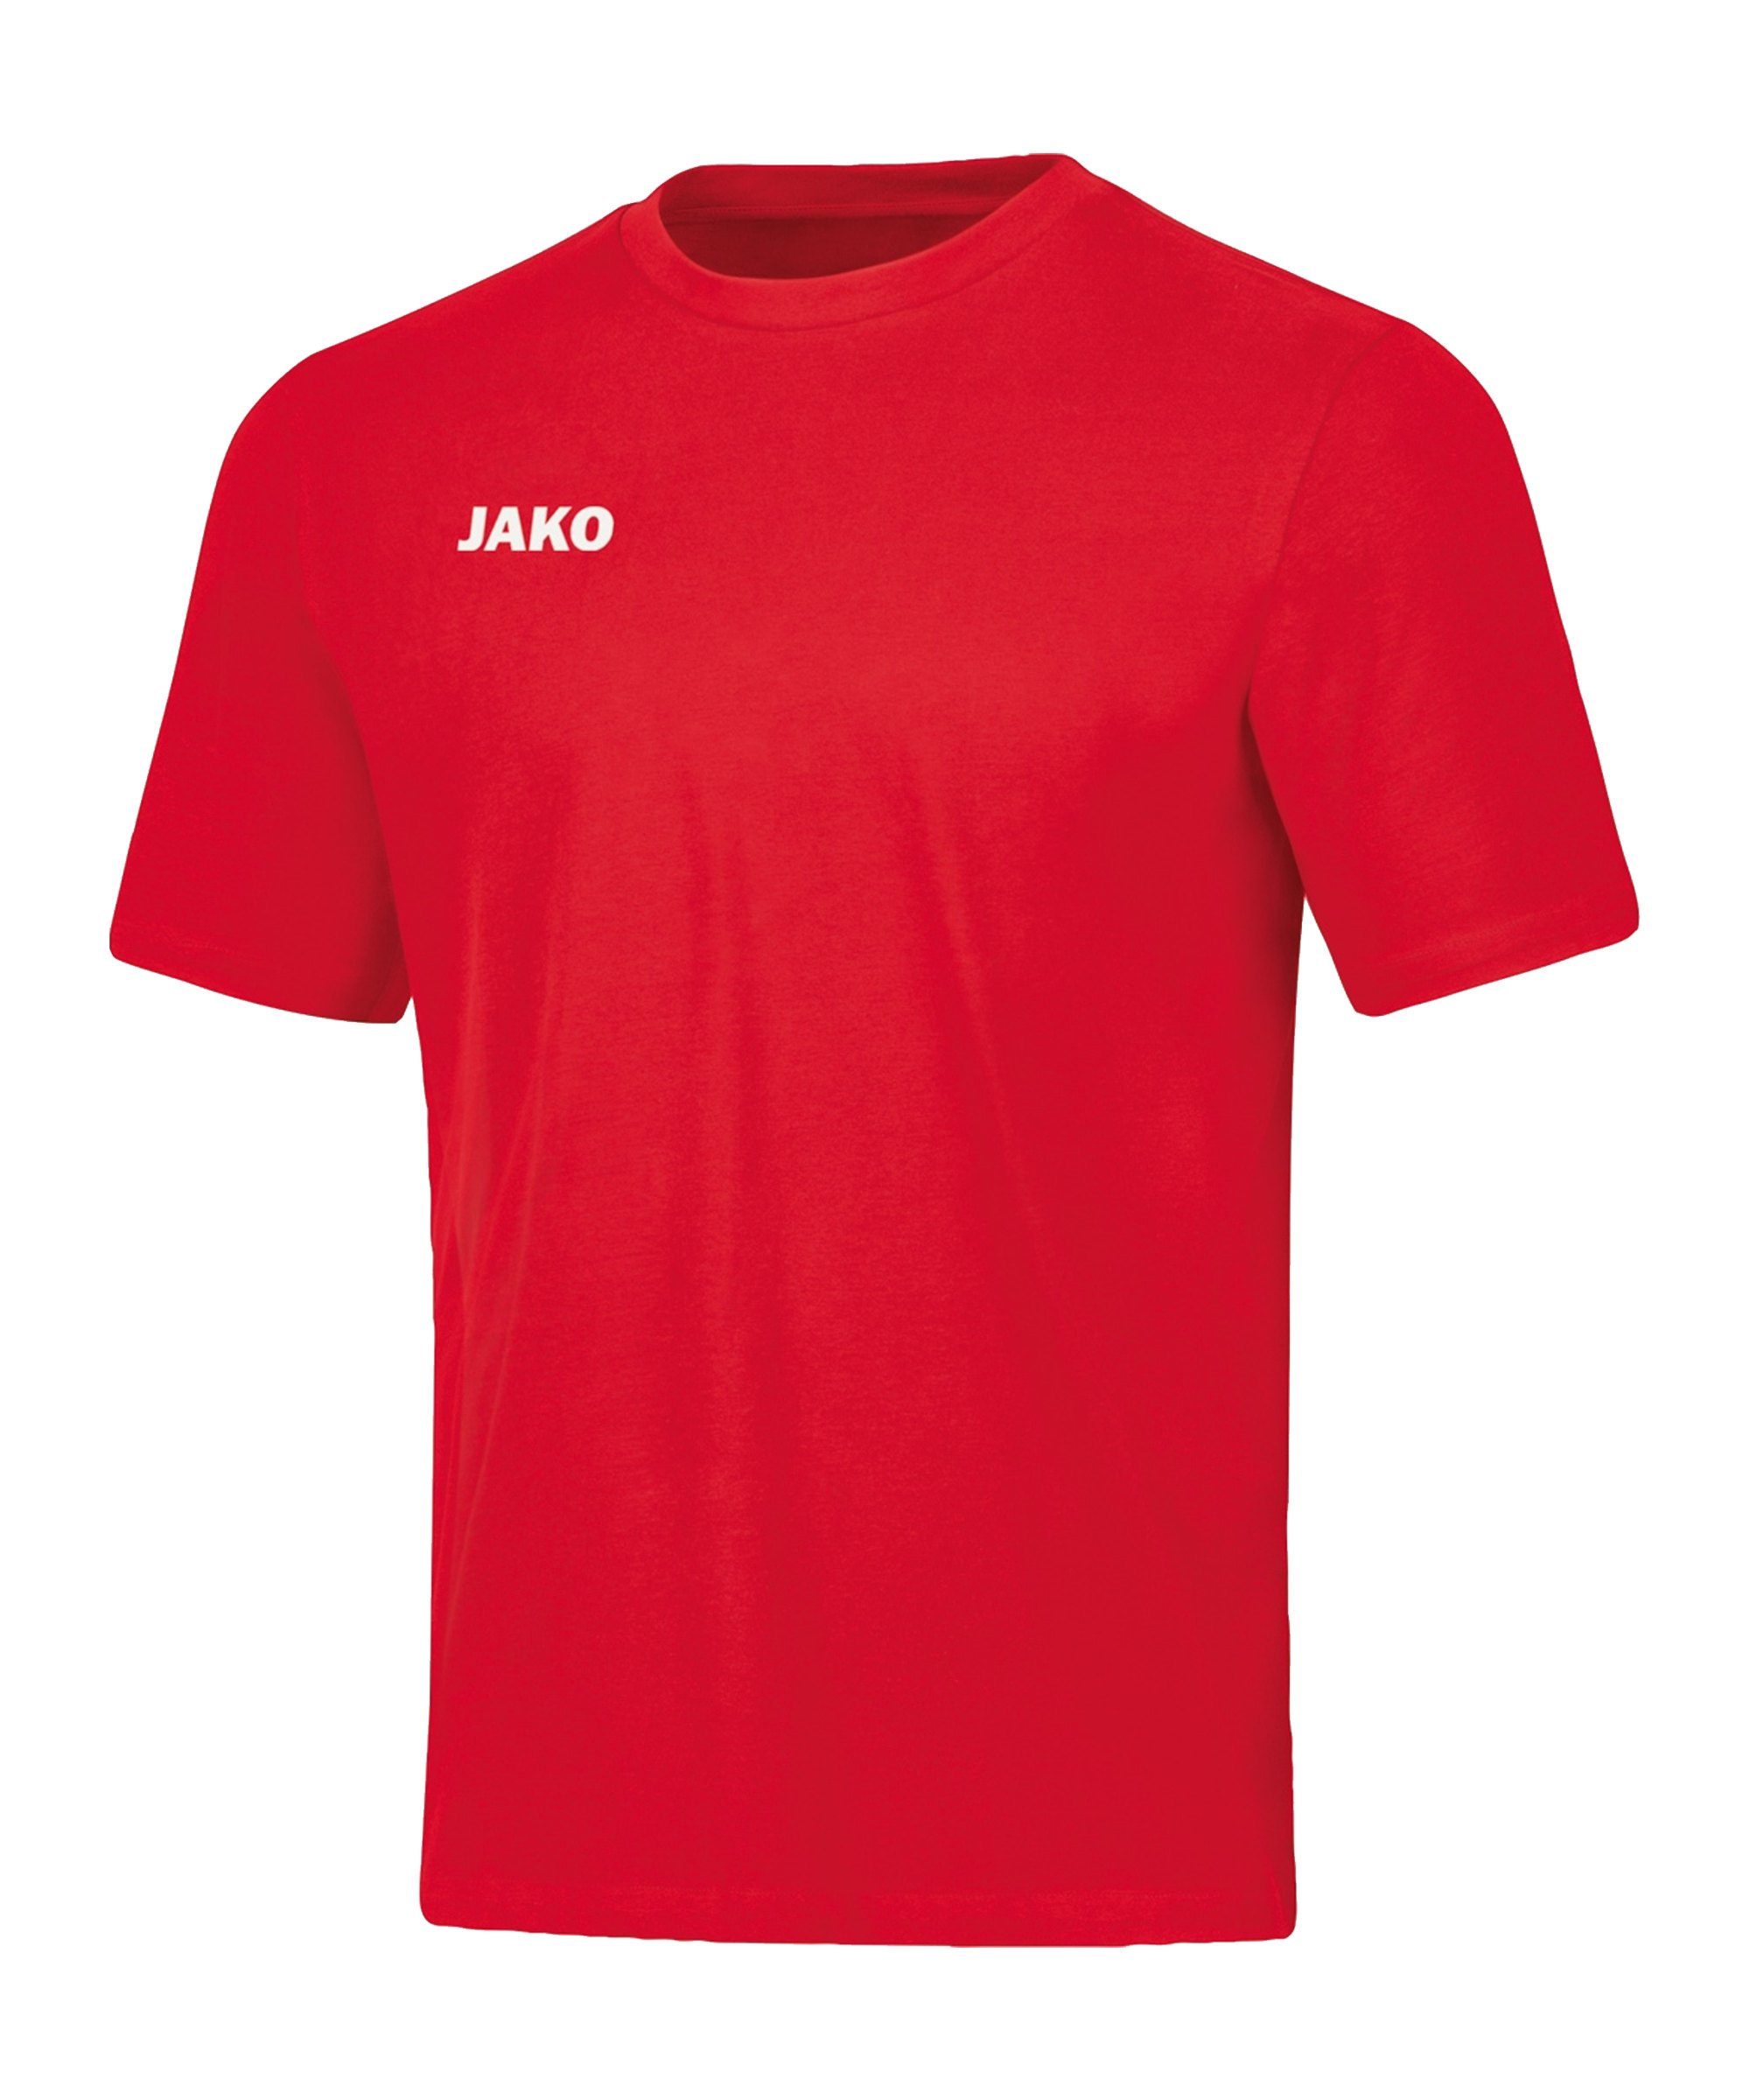 JAKO Base T-Shirt Kids Rot F01 - rot